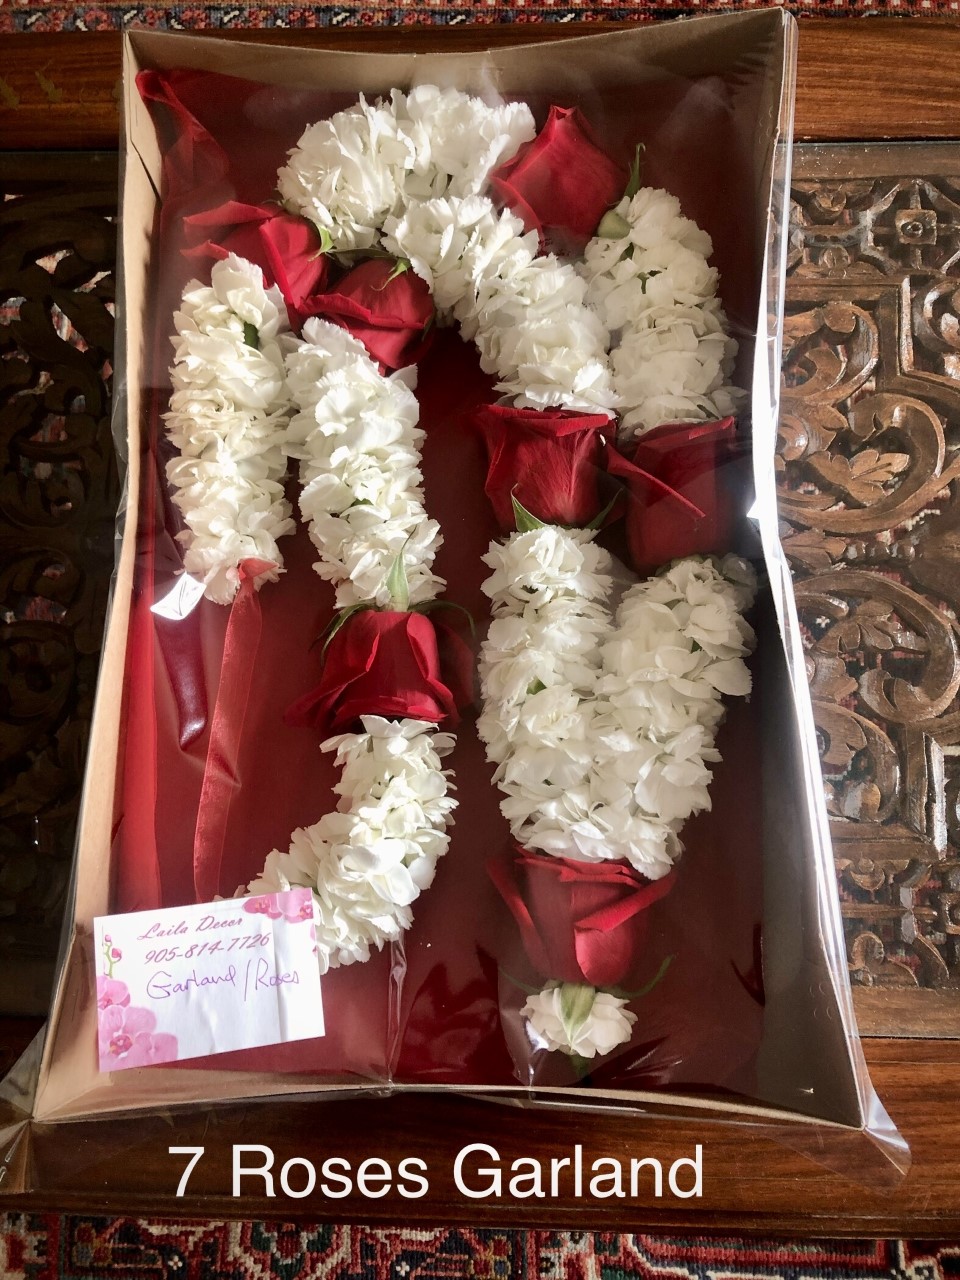 7 Roses garland in box $95 